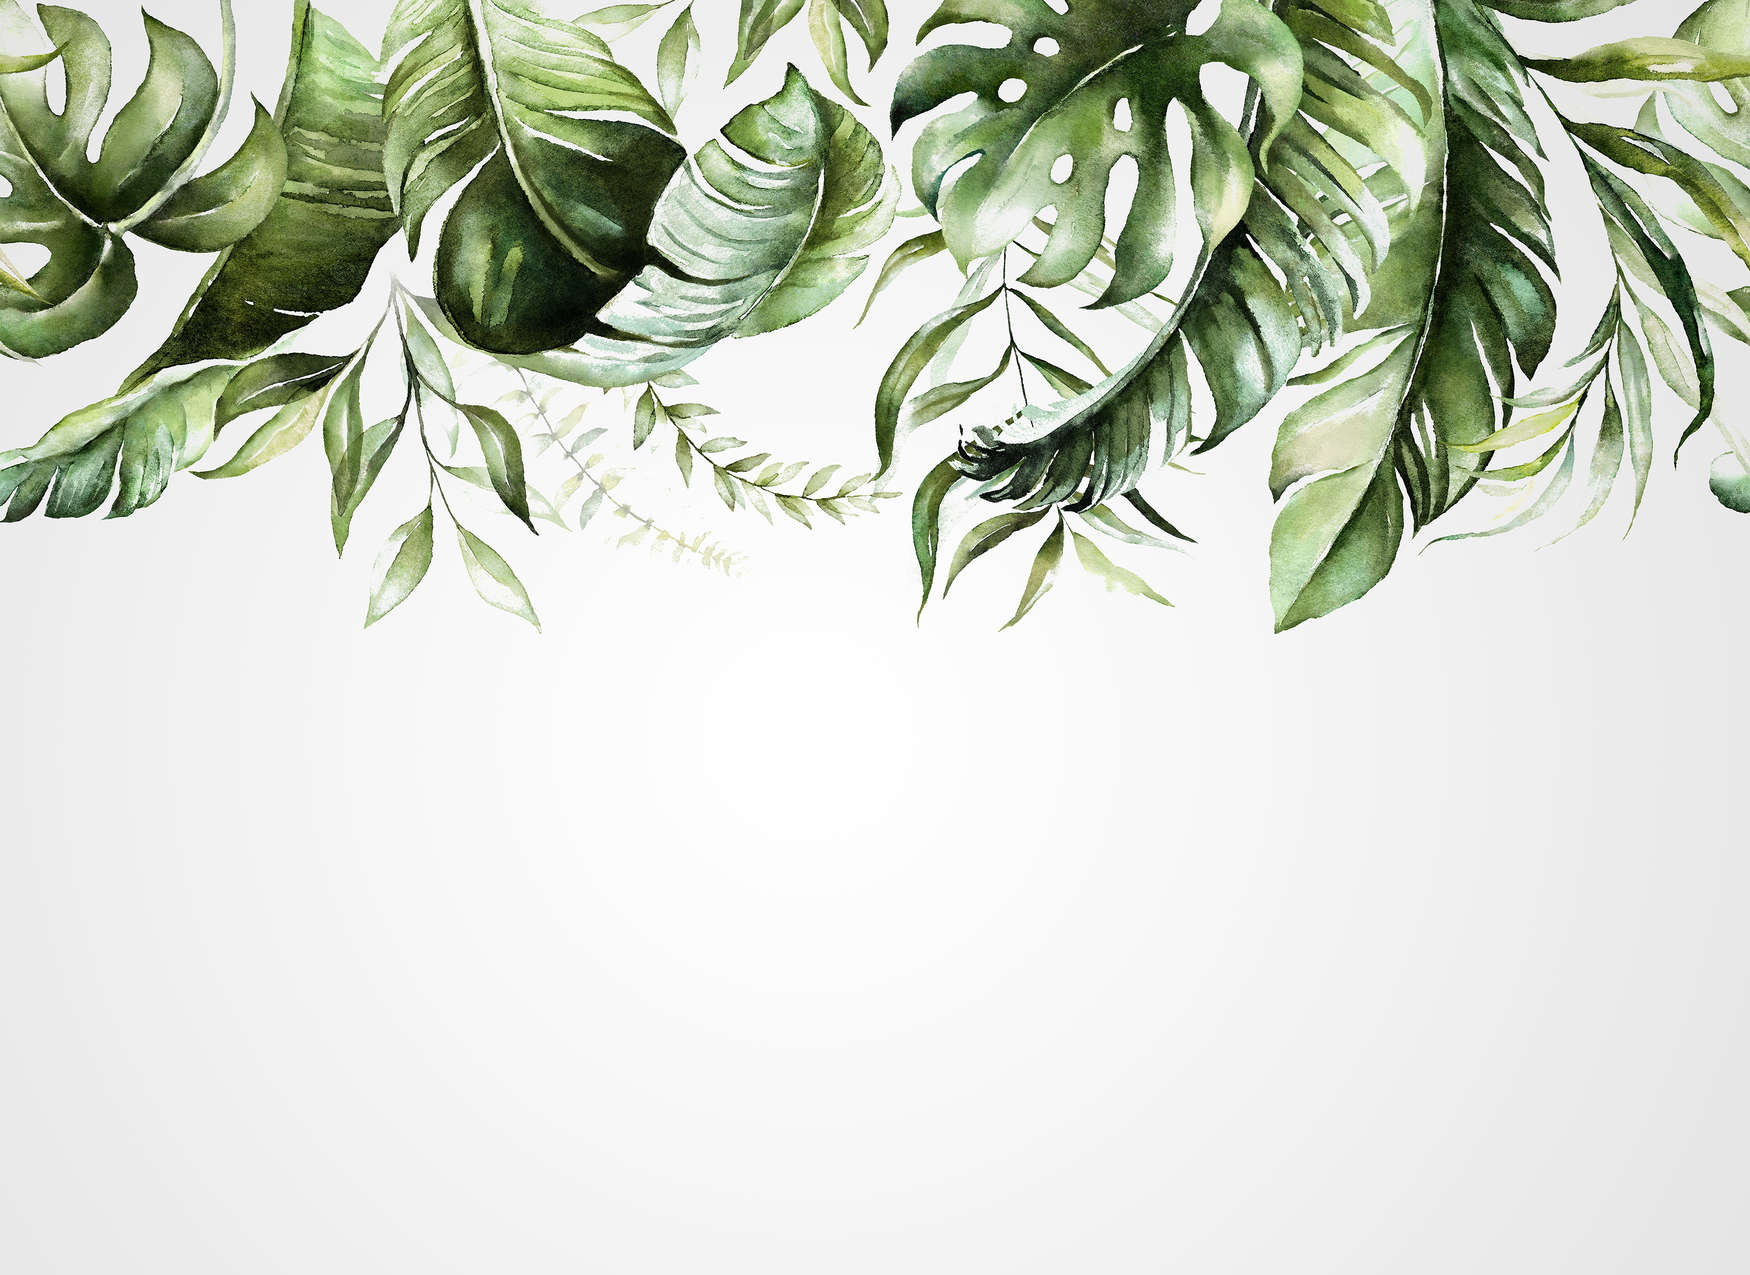             Digital behang met tropische bladranken op een muur - Groen, Wit
        